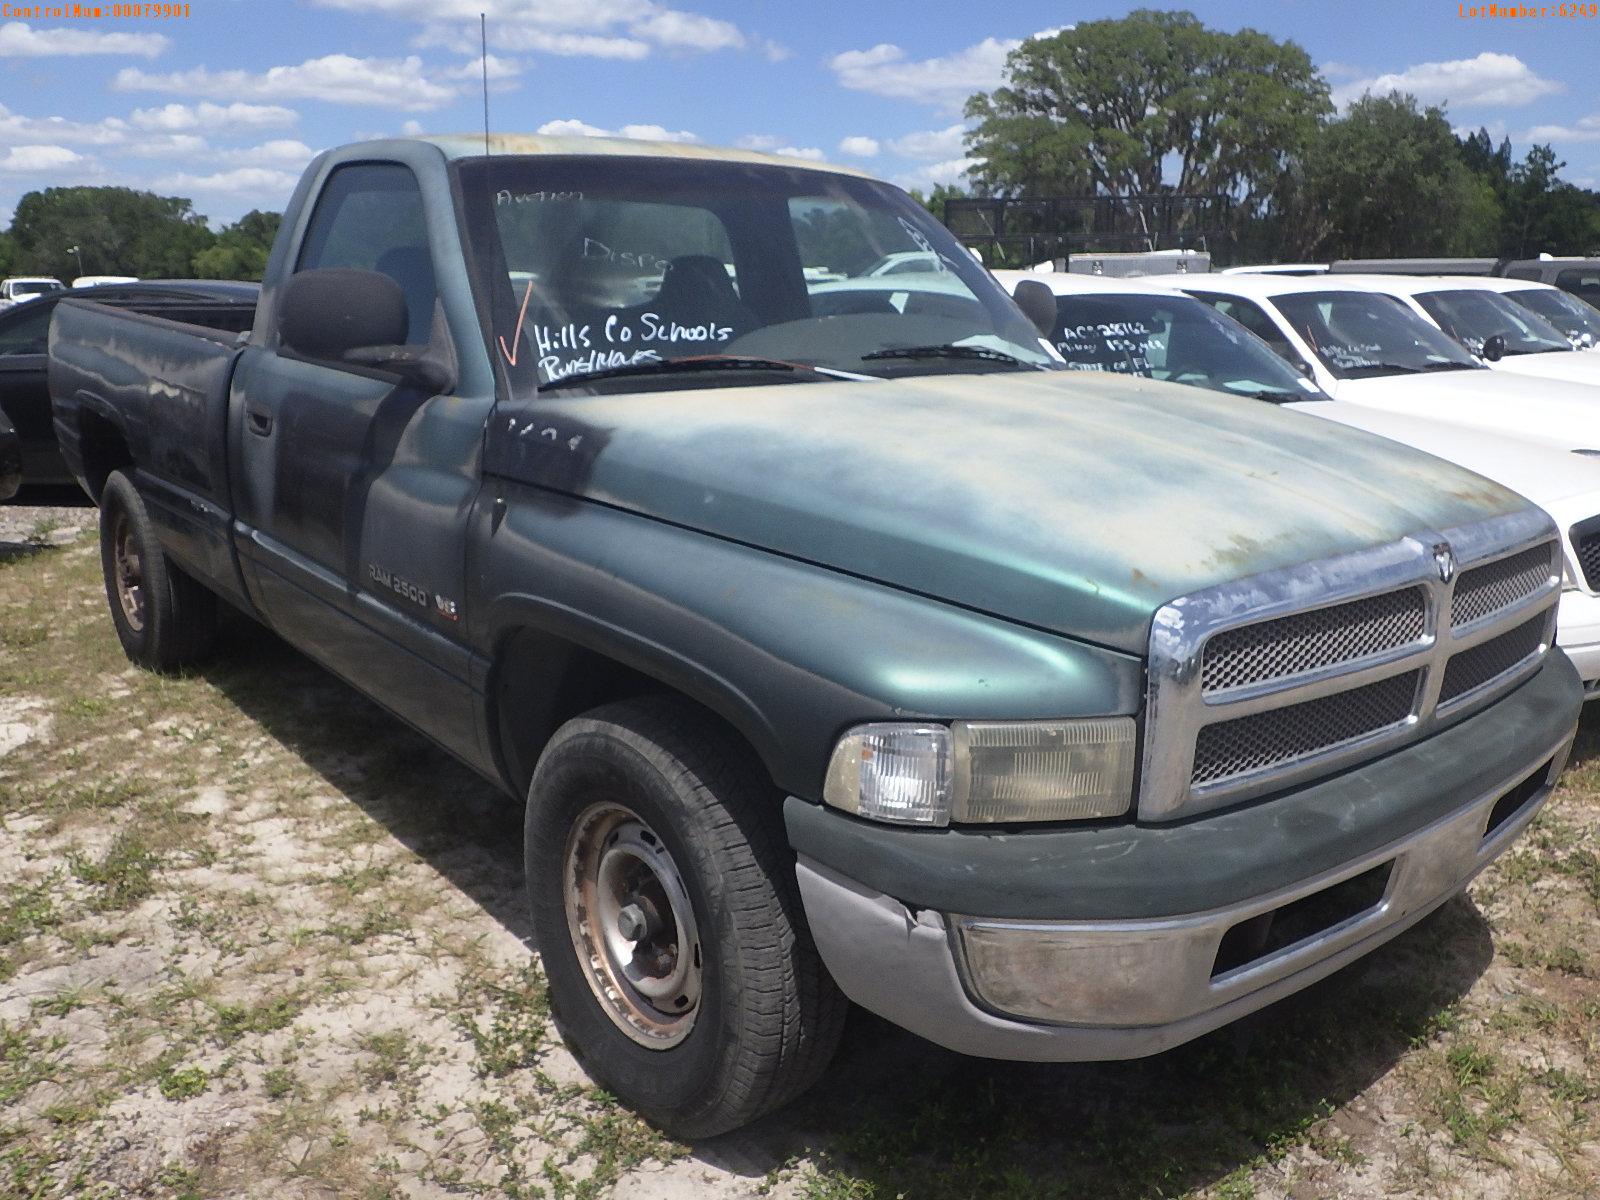 5-06249 (Trucks-Pickup 2D)  Seller: Gov-Hillsborough County School 1999 DODG RAM